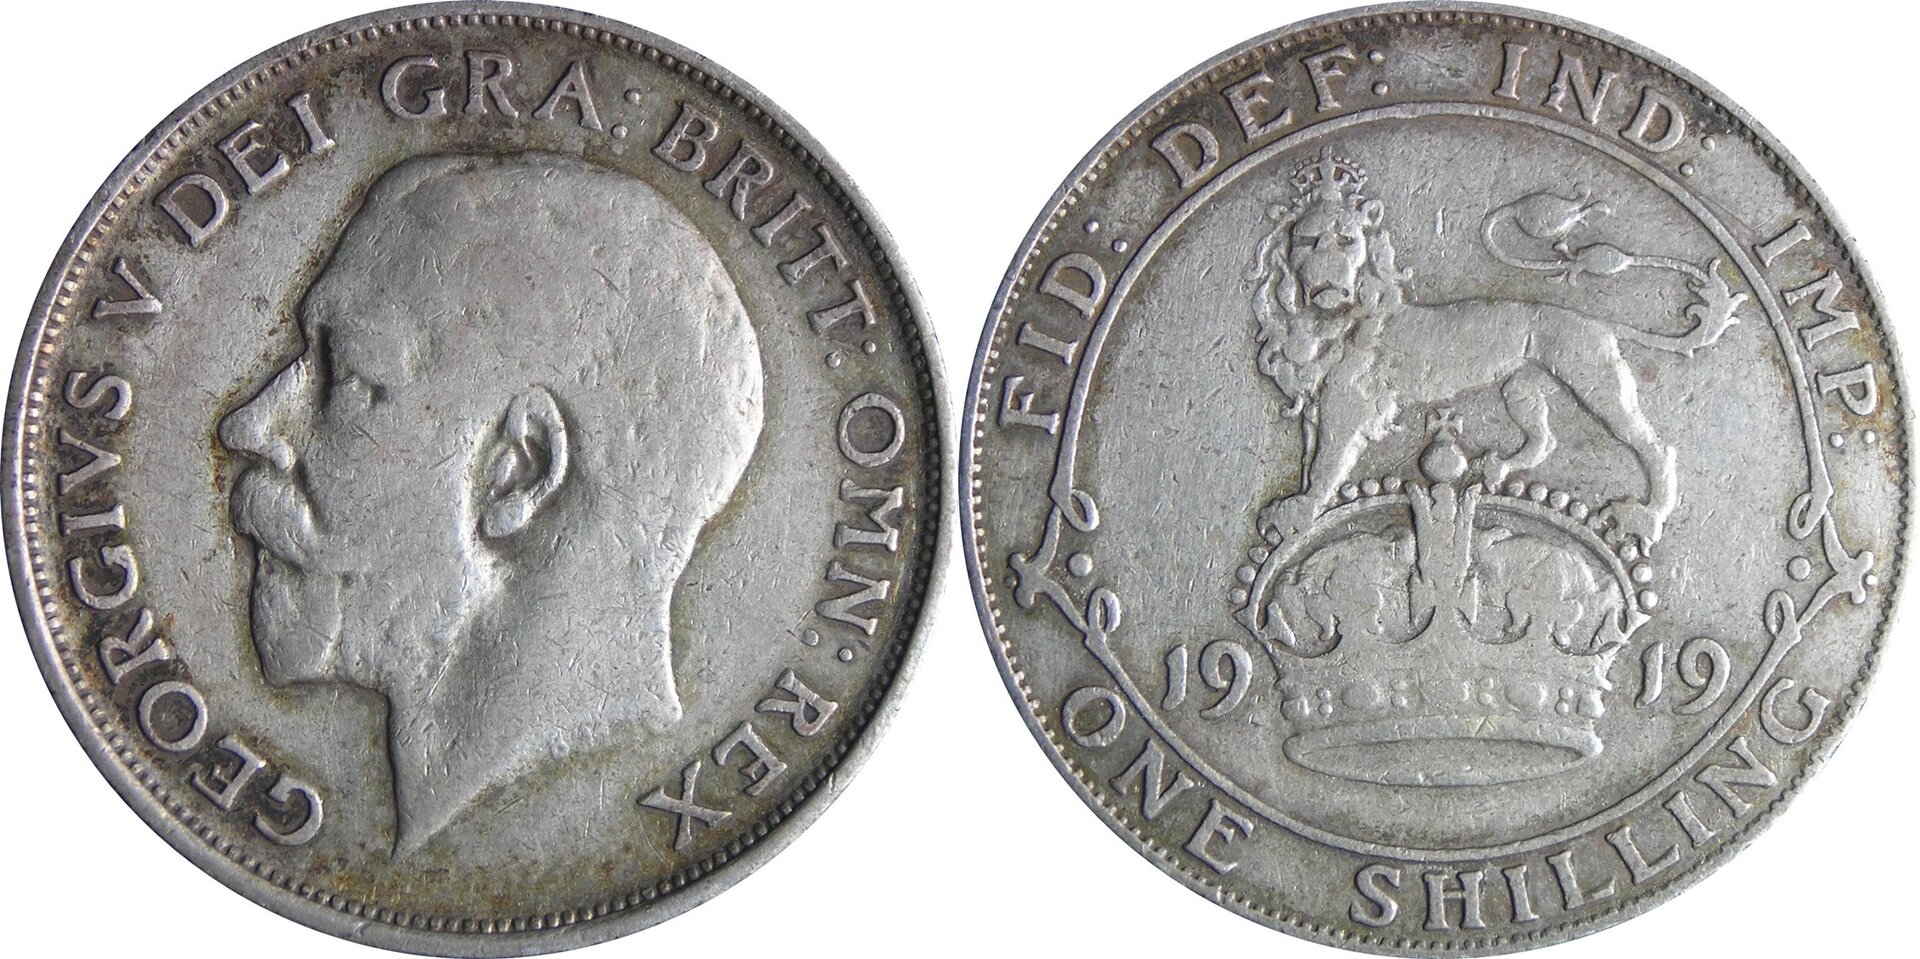 1919 GB shilling.jpg